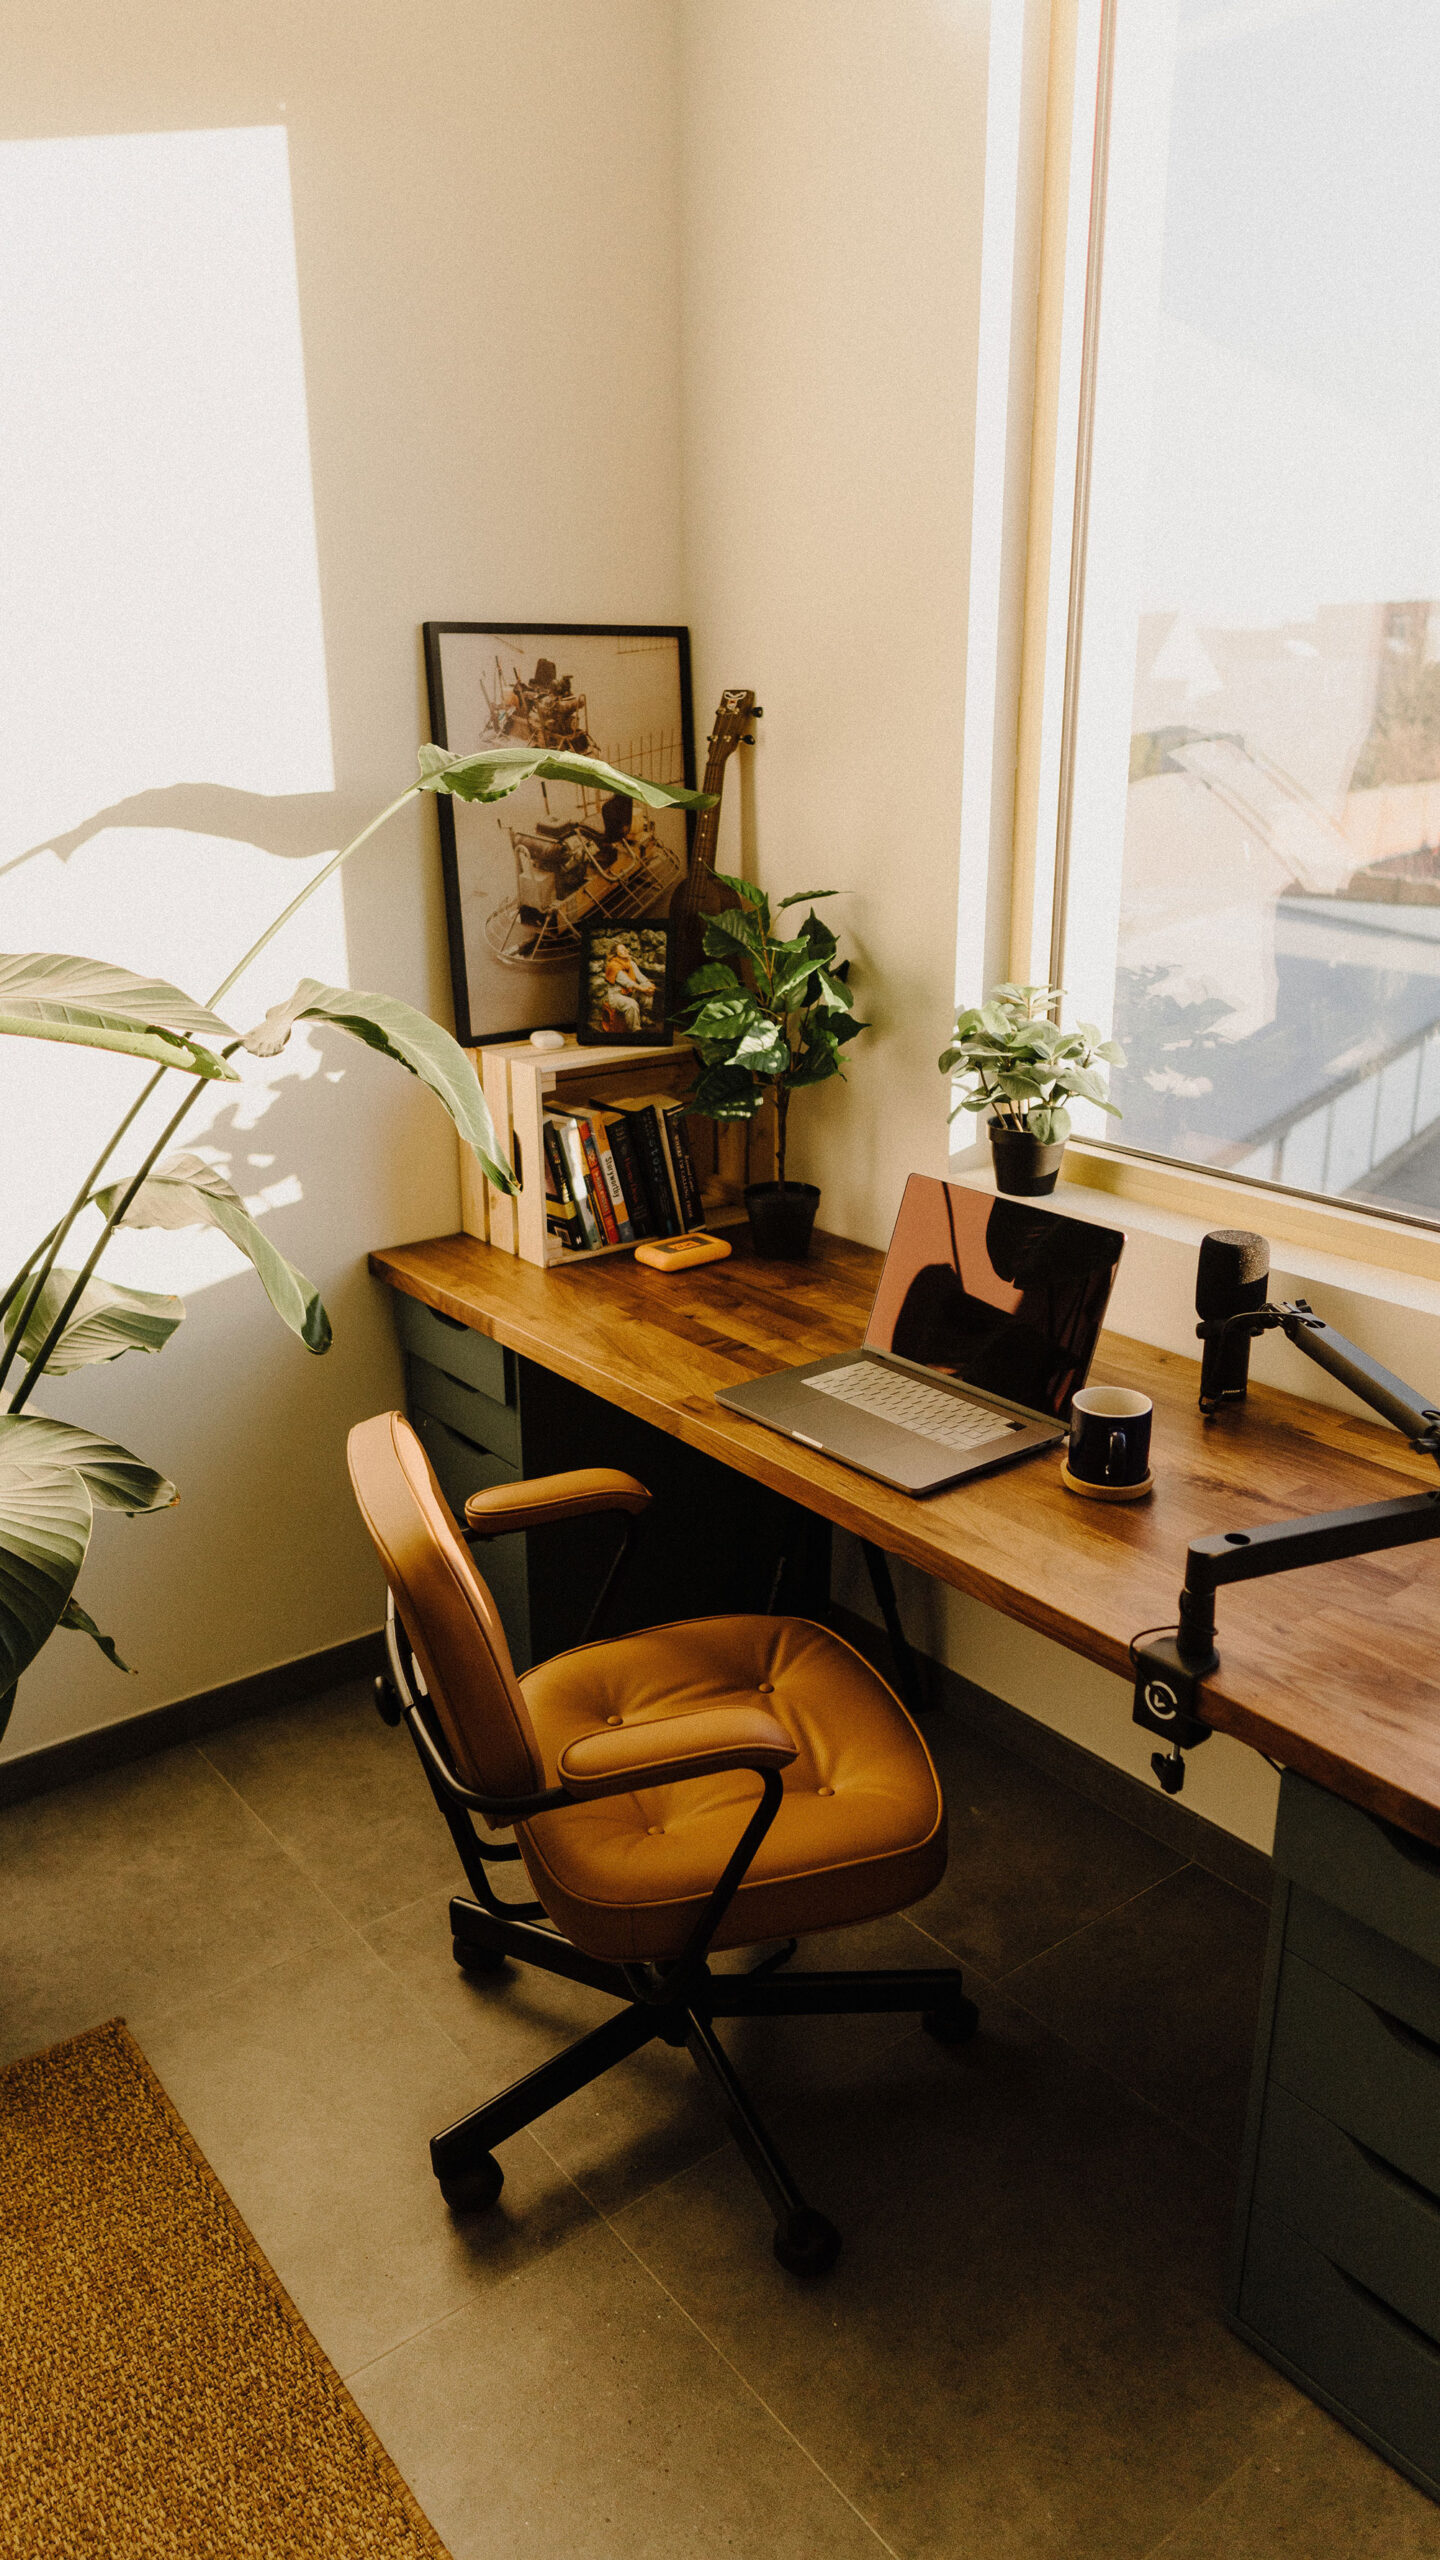 Biofilne domowe biuro z biurkiem, krzesłem i rośliną.